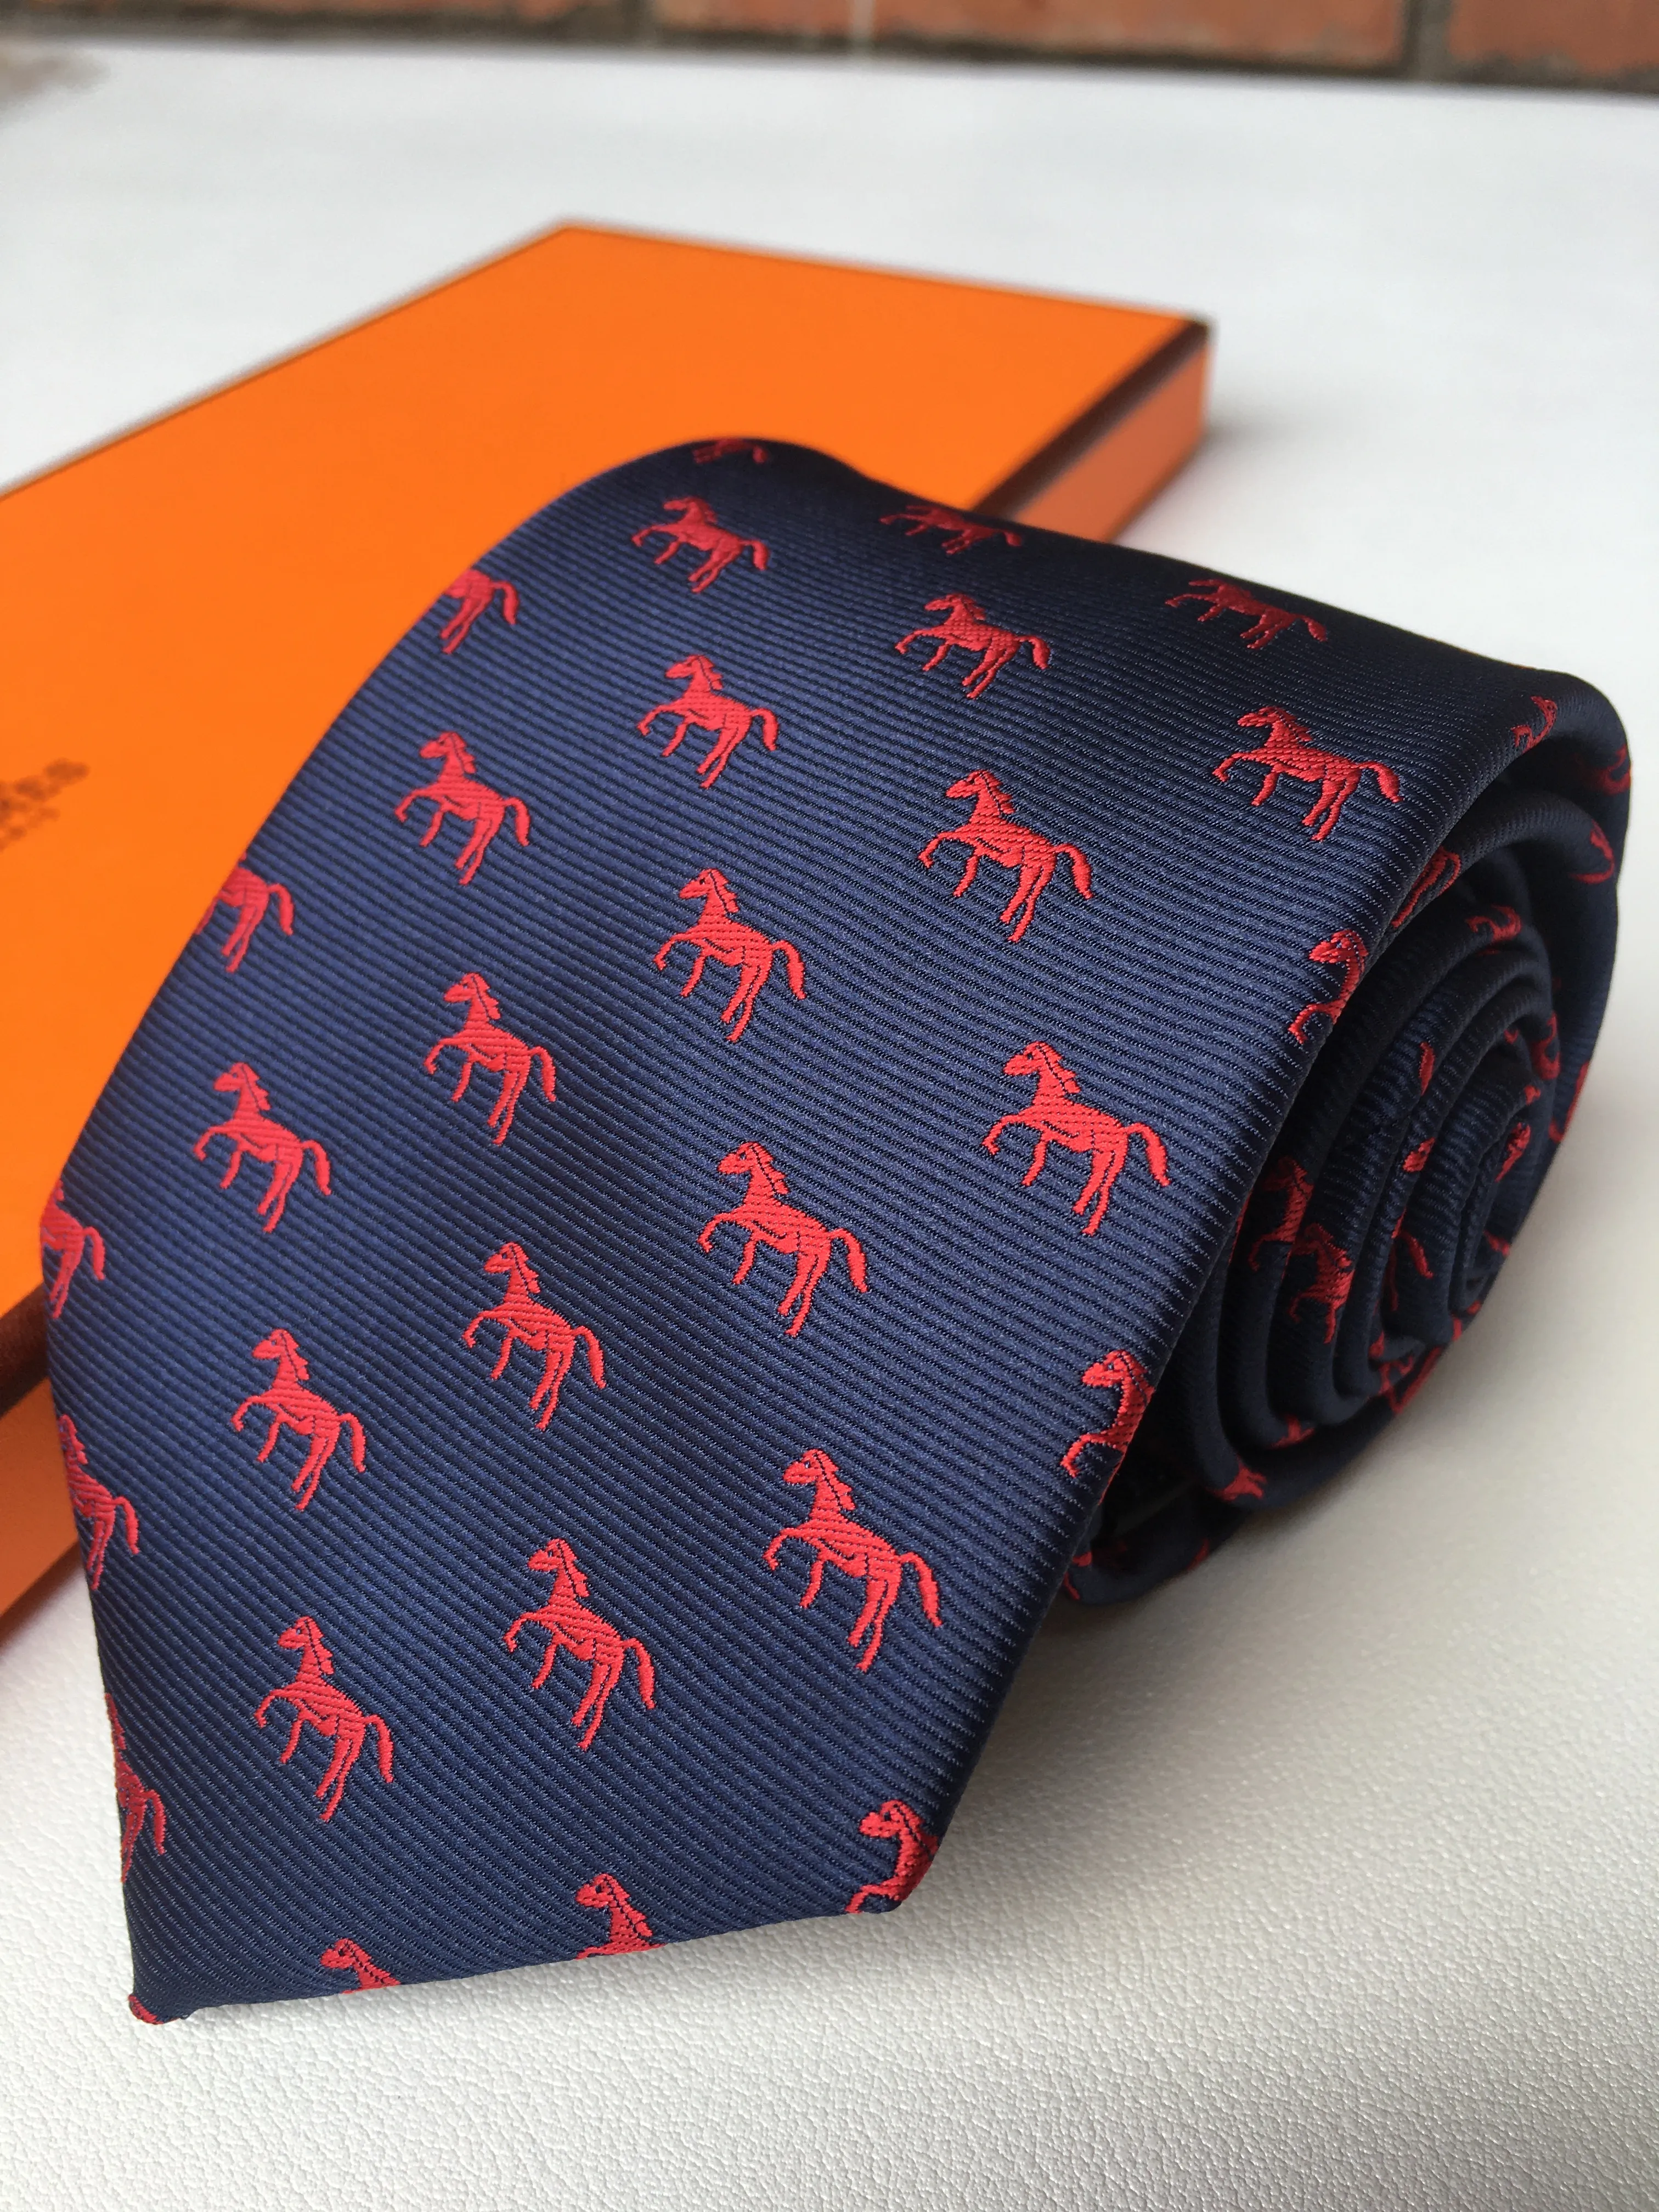 ビジネスデザイナータイメンズシルクネックの高品質のクラバッタuomo男性ビジネスネクタイ文字刺繍krawatte box lux230m